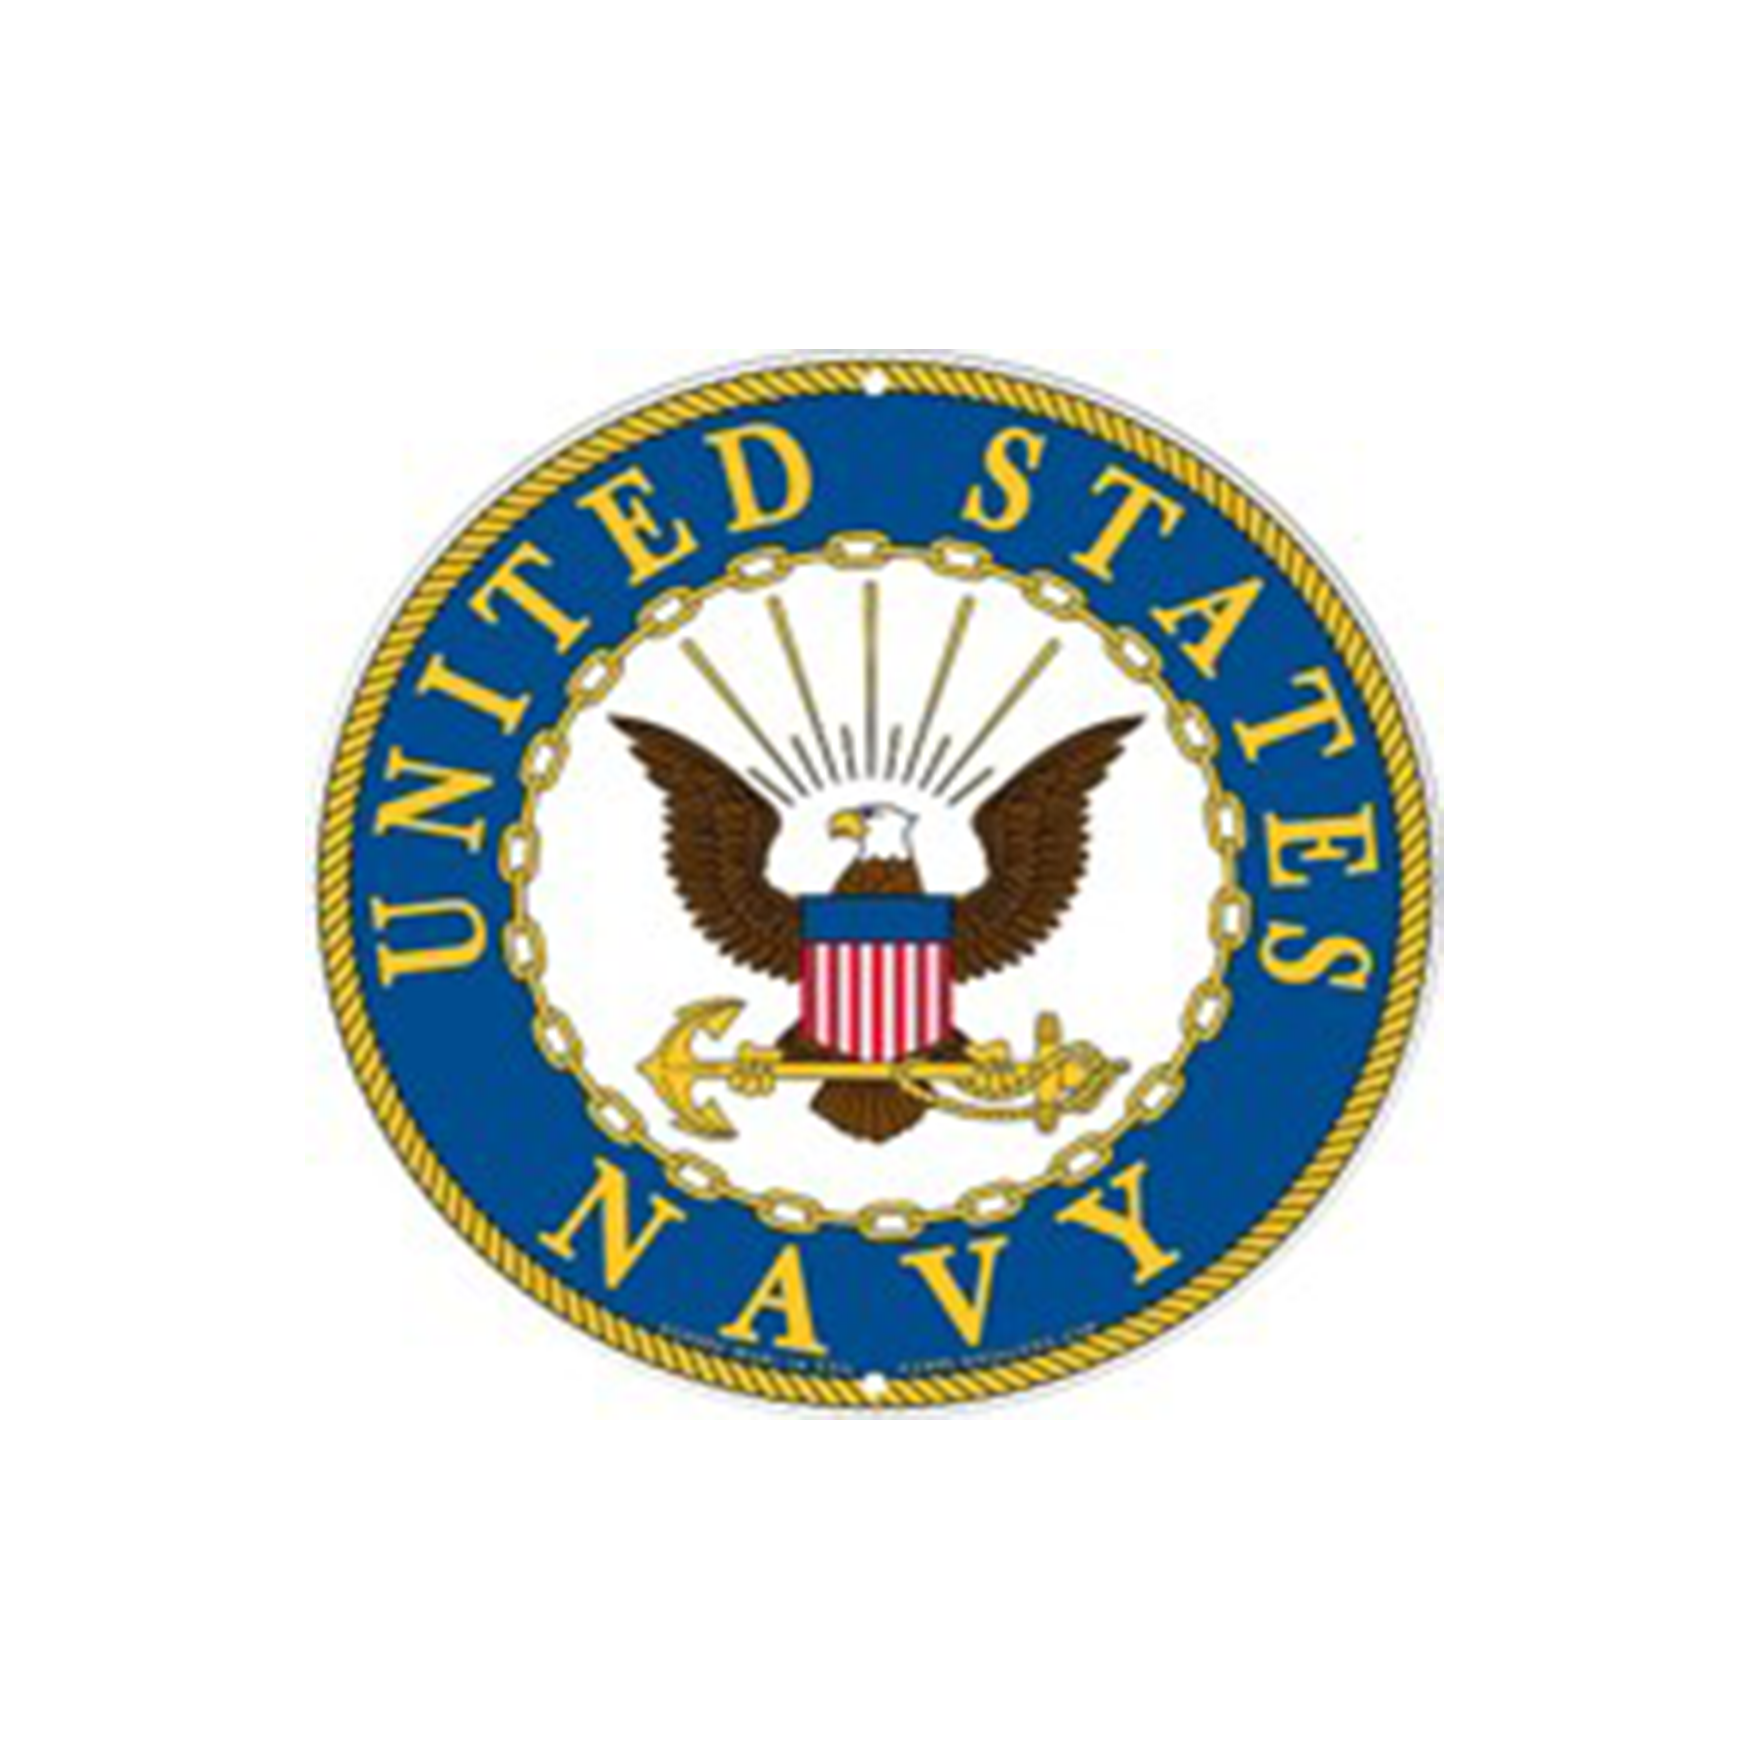 United States Navy logo